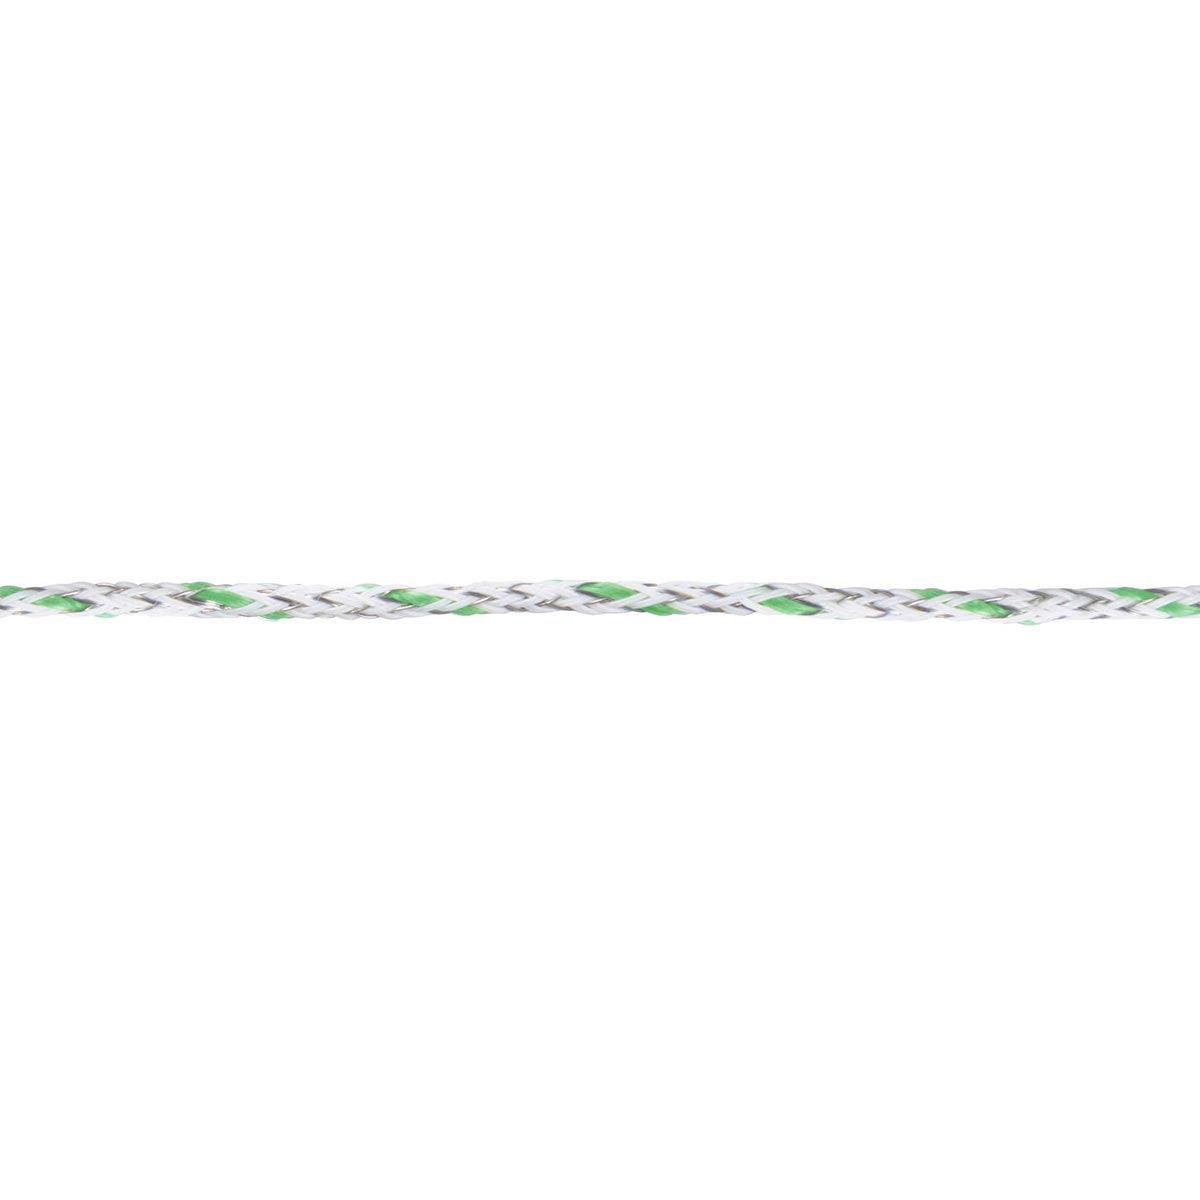 Ako Pasture Fence Wire Premium Ultra 400m, 6x0.20 Niro + 3x0.25 Copper, white-green